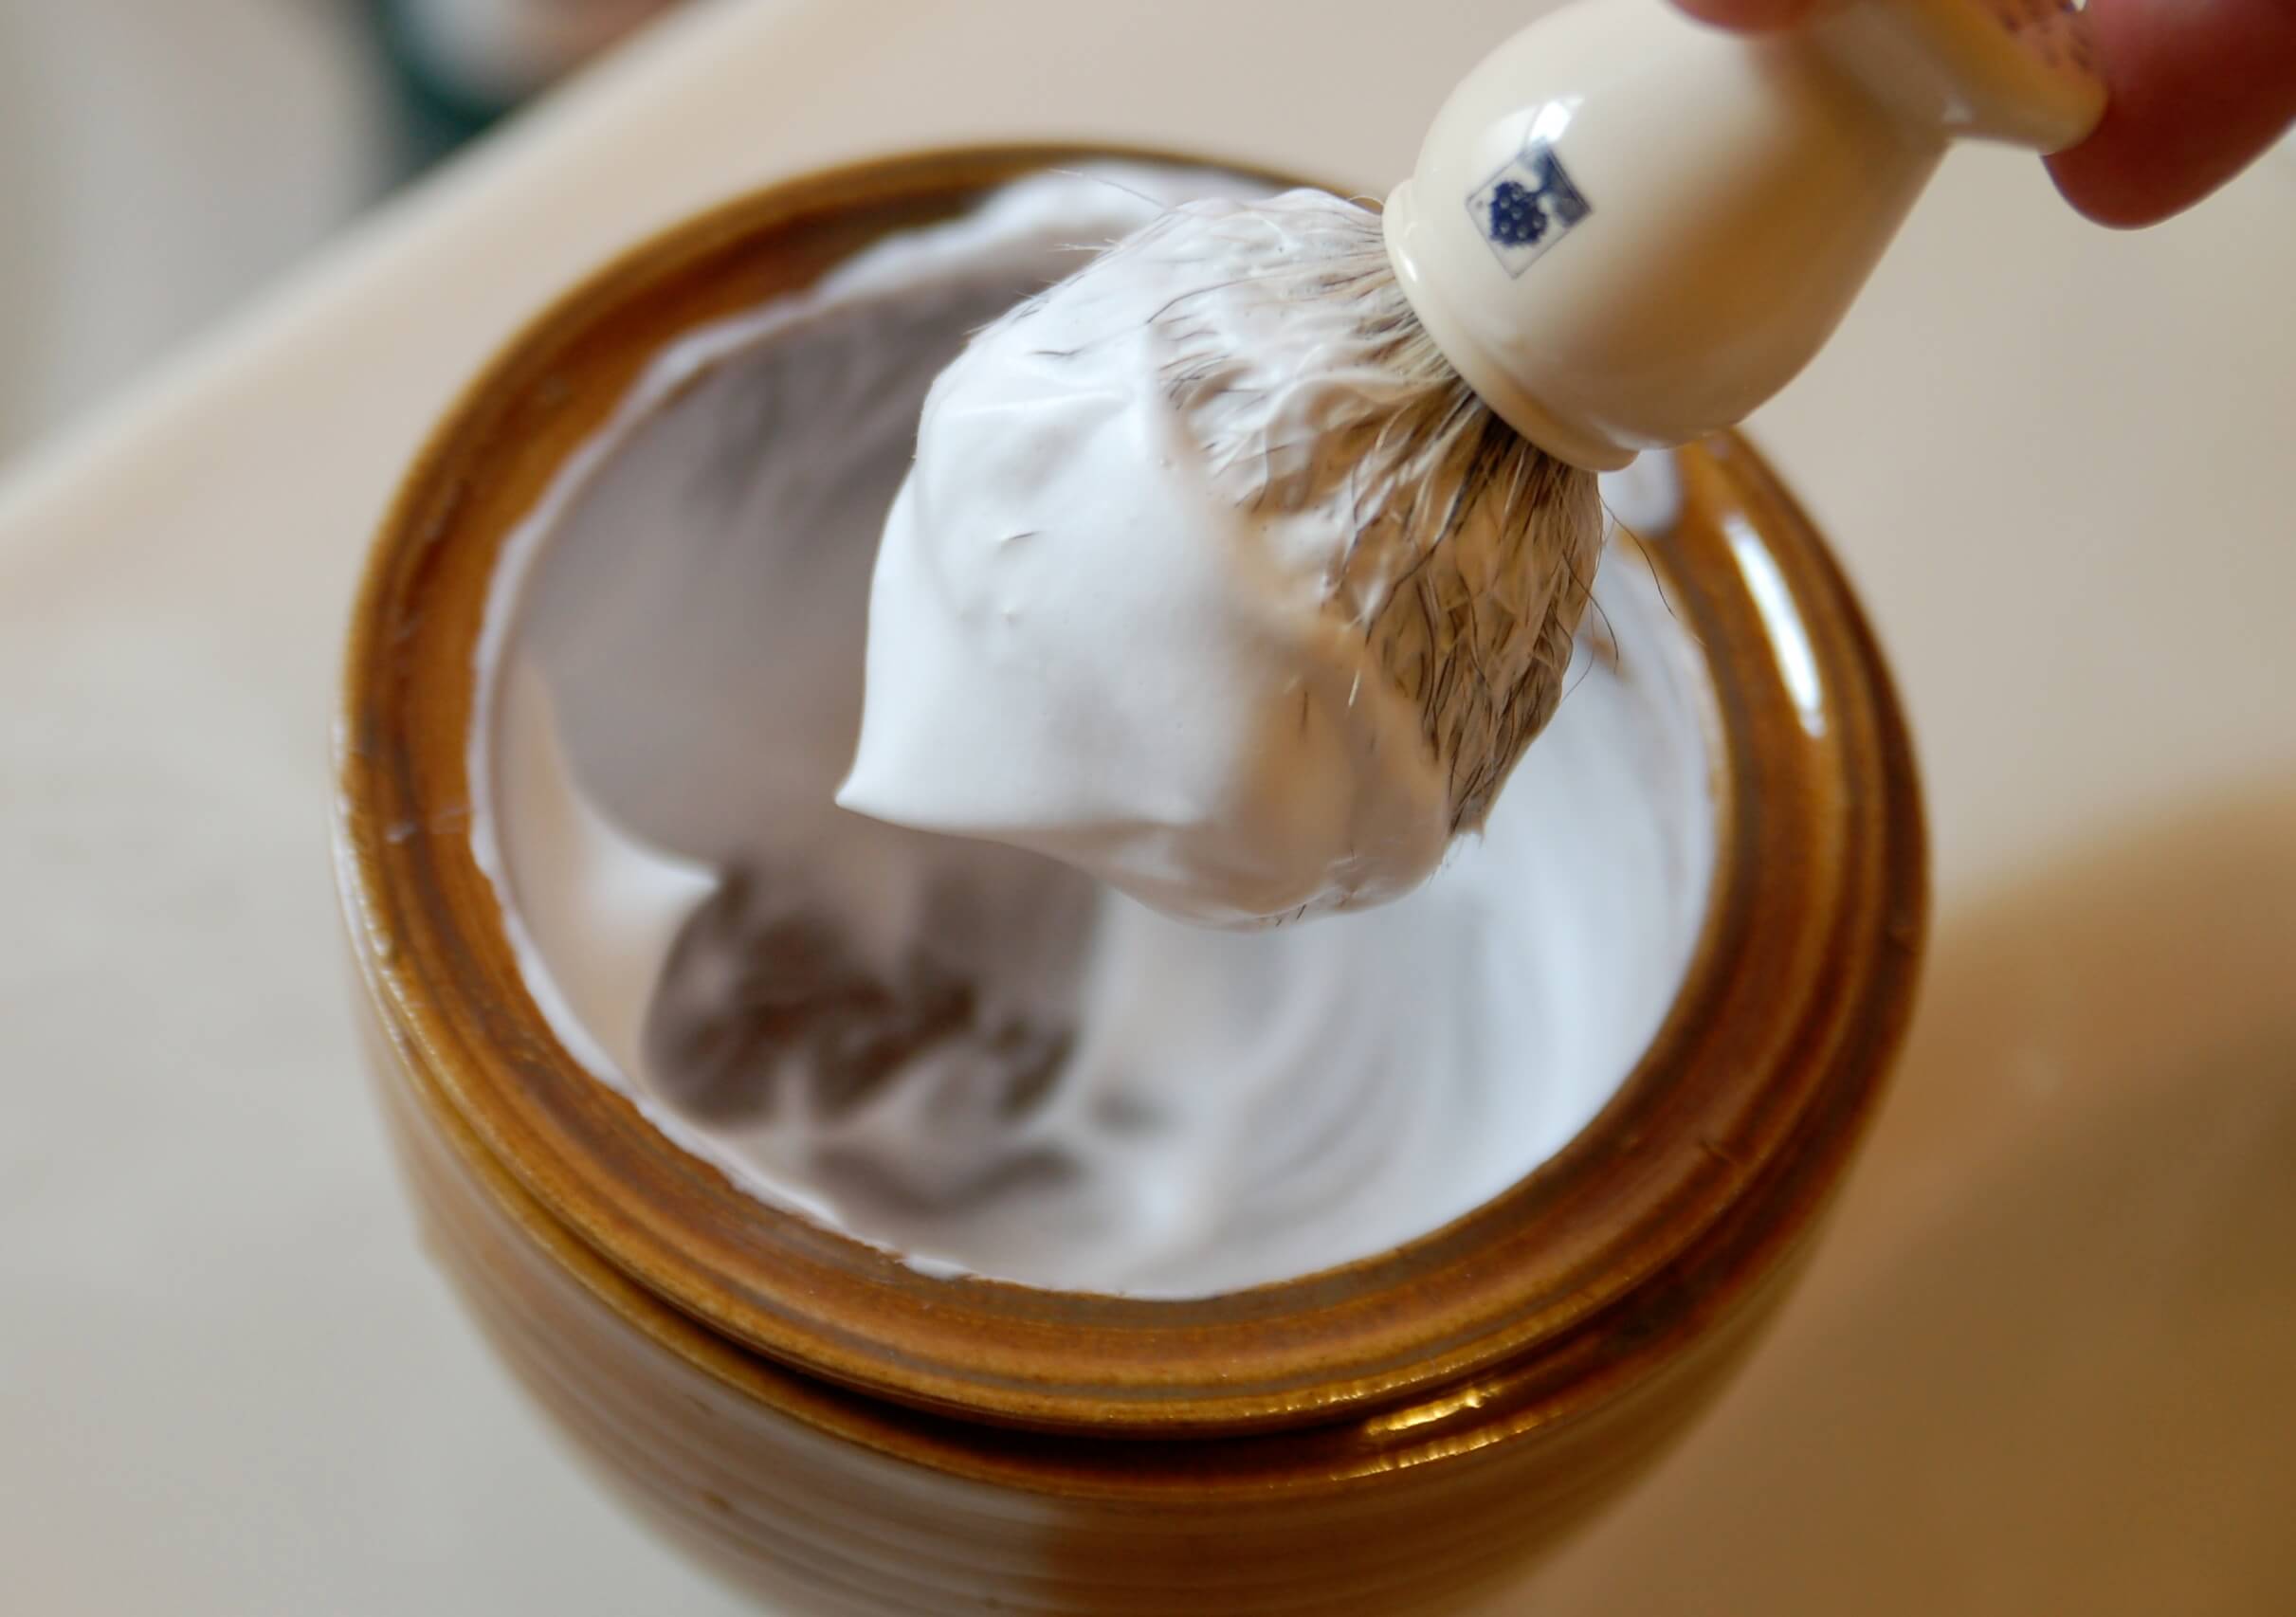 badger brush to apply the shaving cream